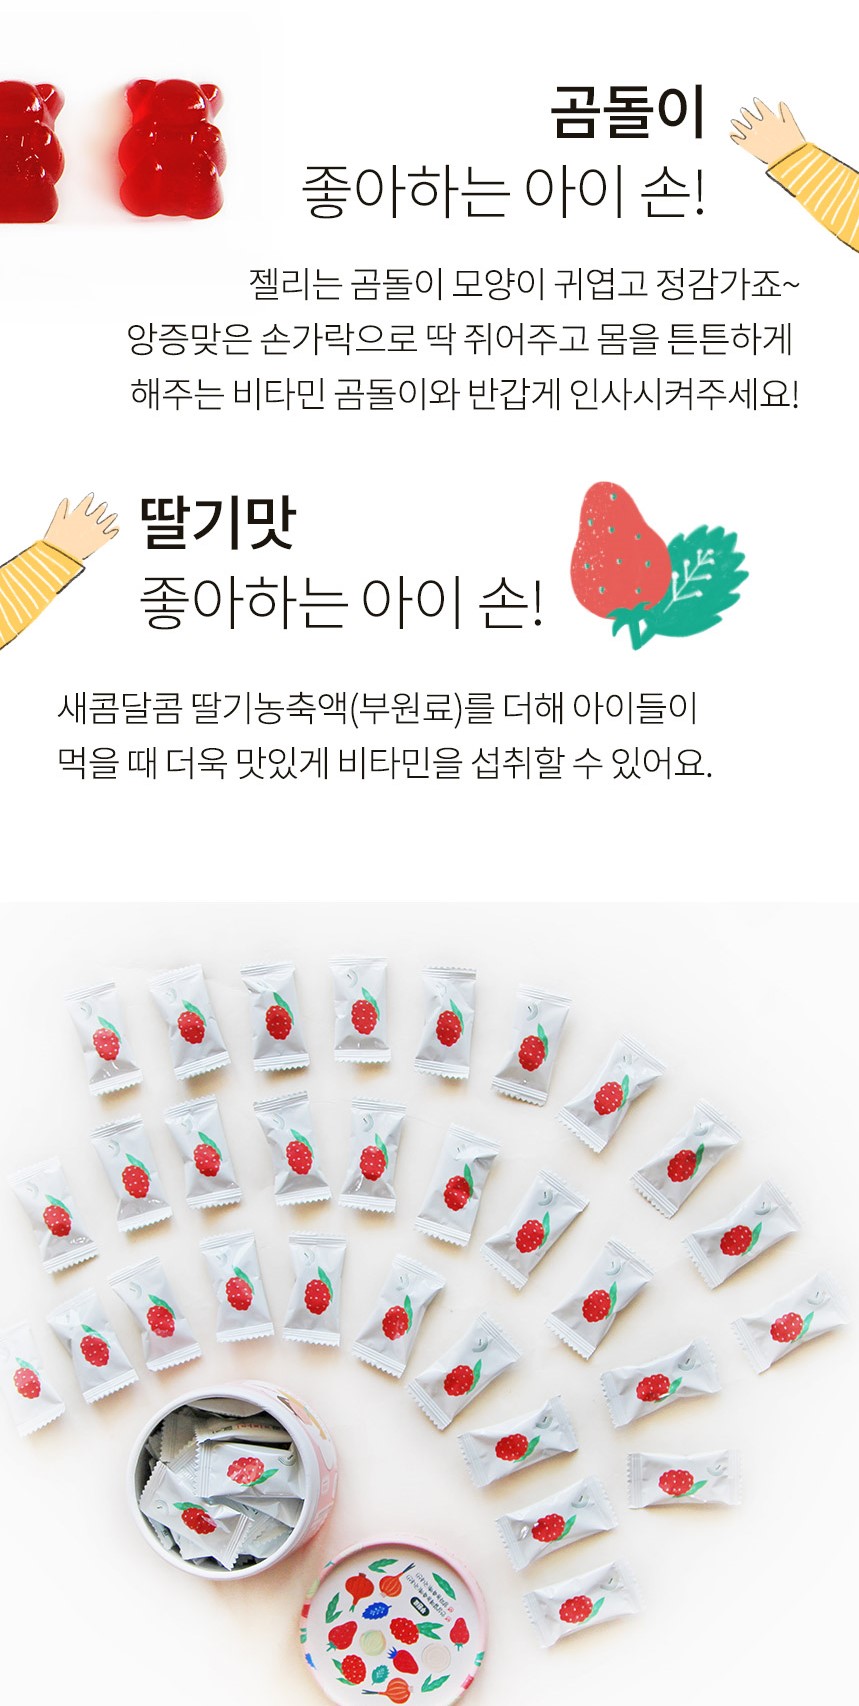 韓國食品-[Ecomommeal] 維他命啫喱軟糖 75g (2.5g*30)